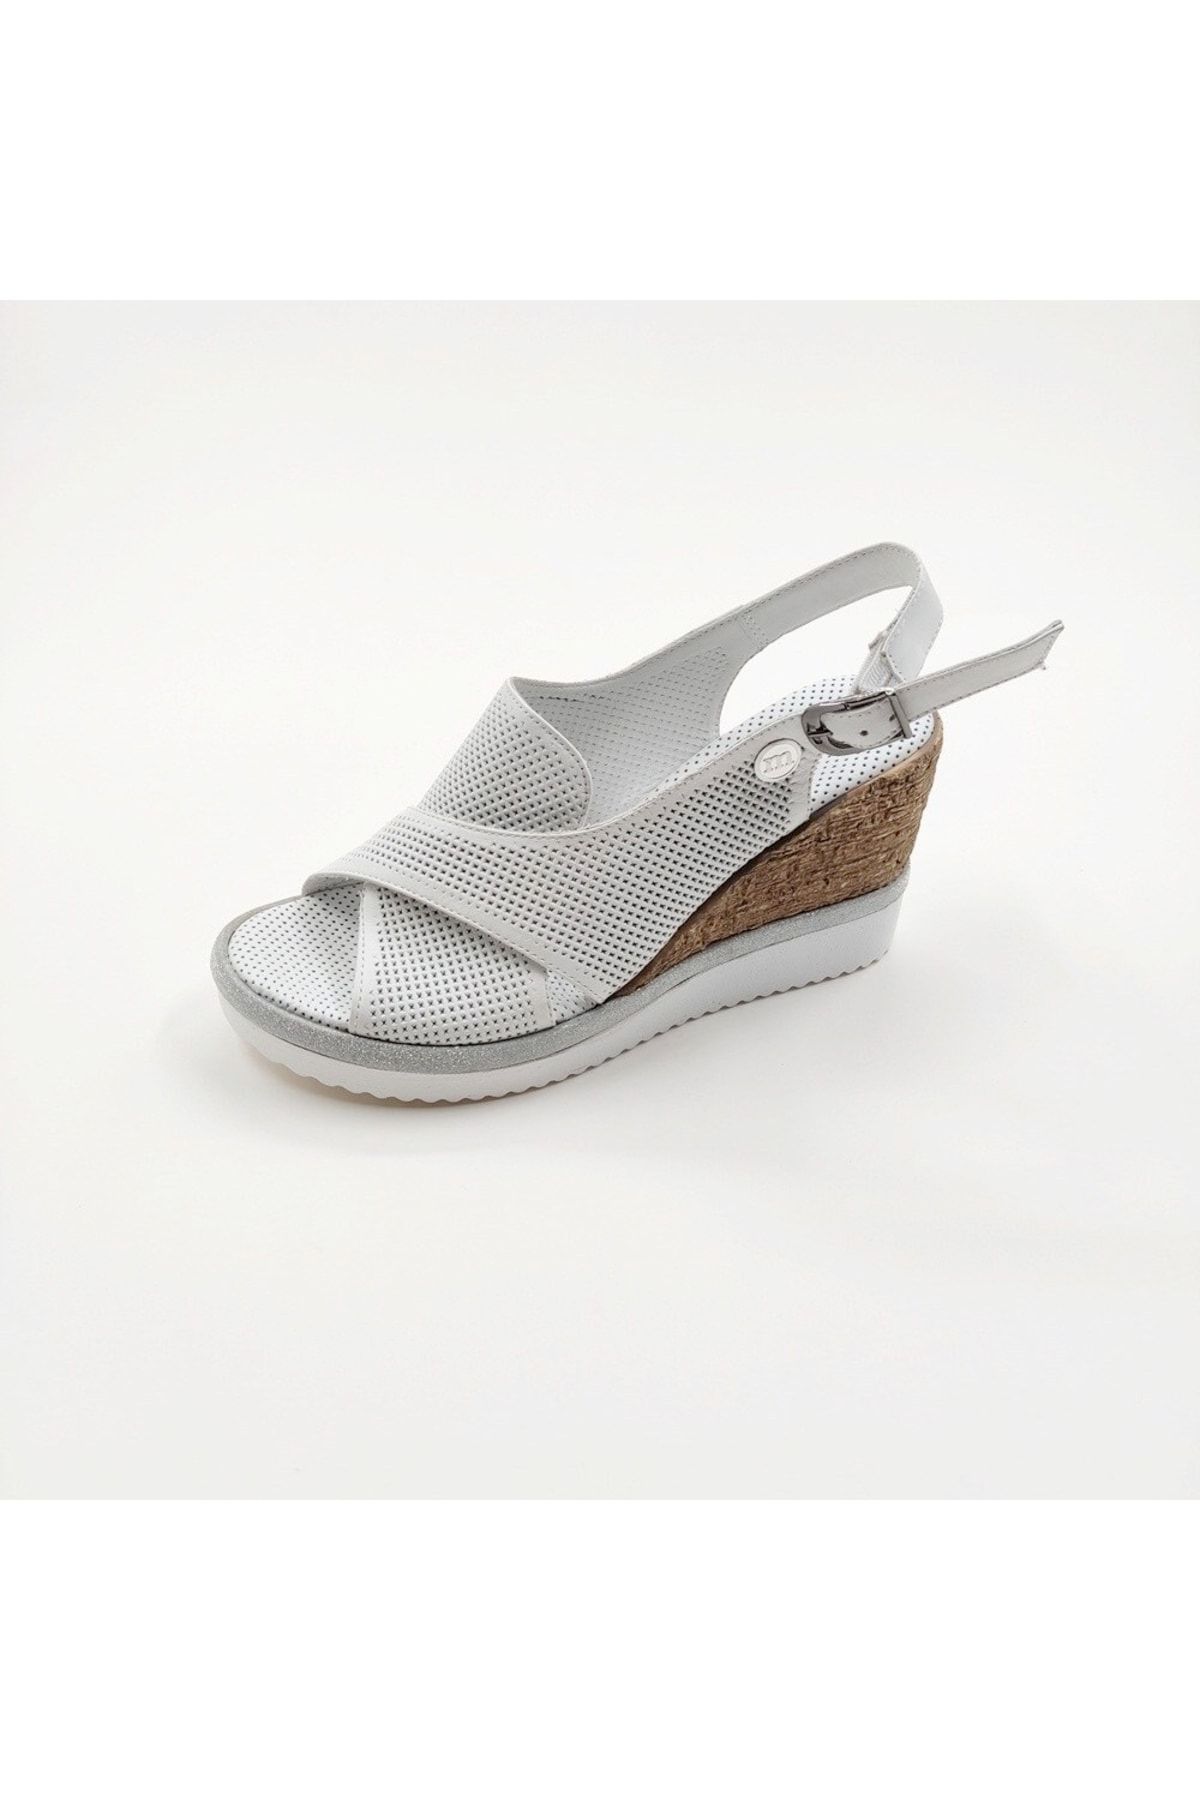 Mammamia D23ys-1110 Deri Dolgu Topuk Sandalet Beyaz